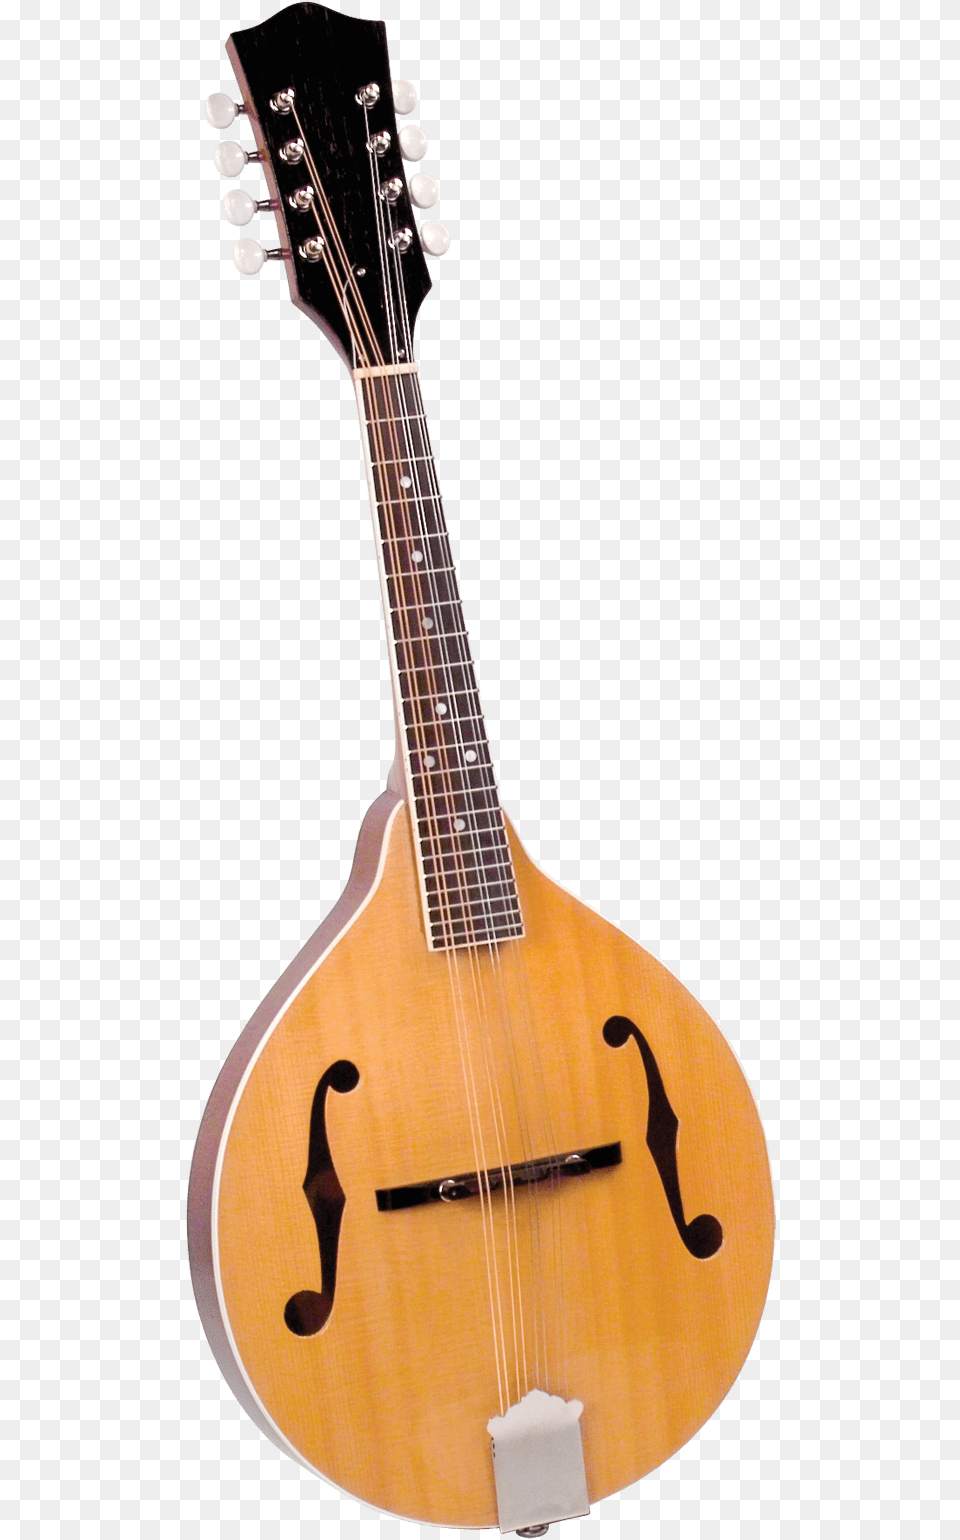 Violao Eletrico Spring, Guitar, Mandolin, Musical Instrument, Lute Free Transparent Png